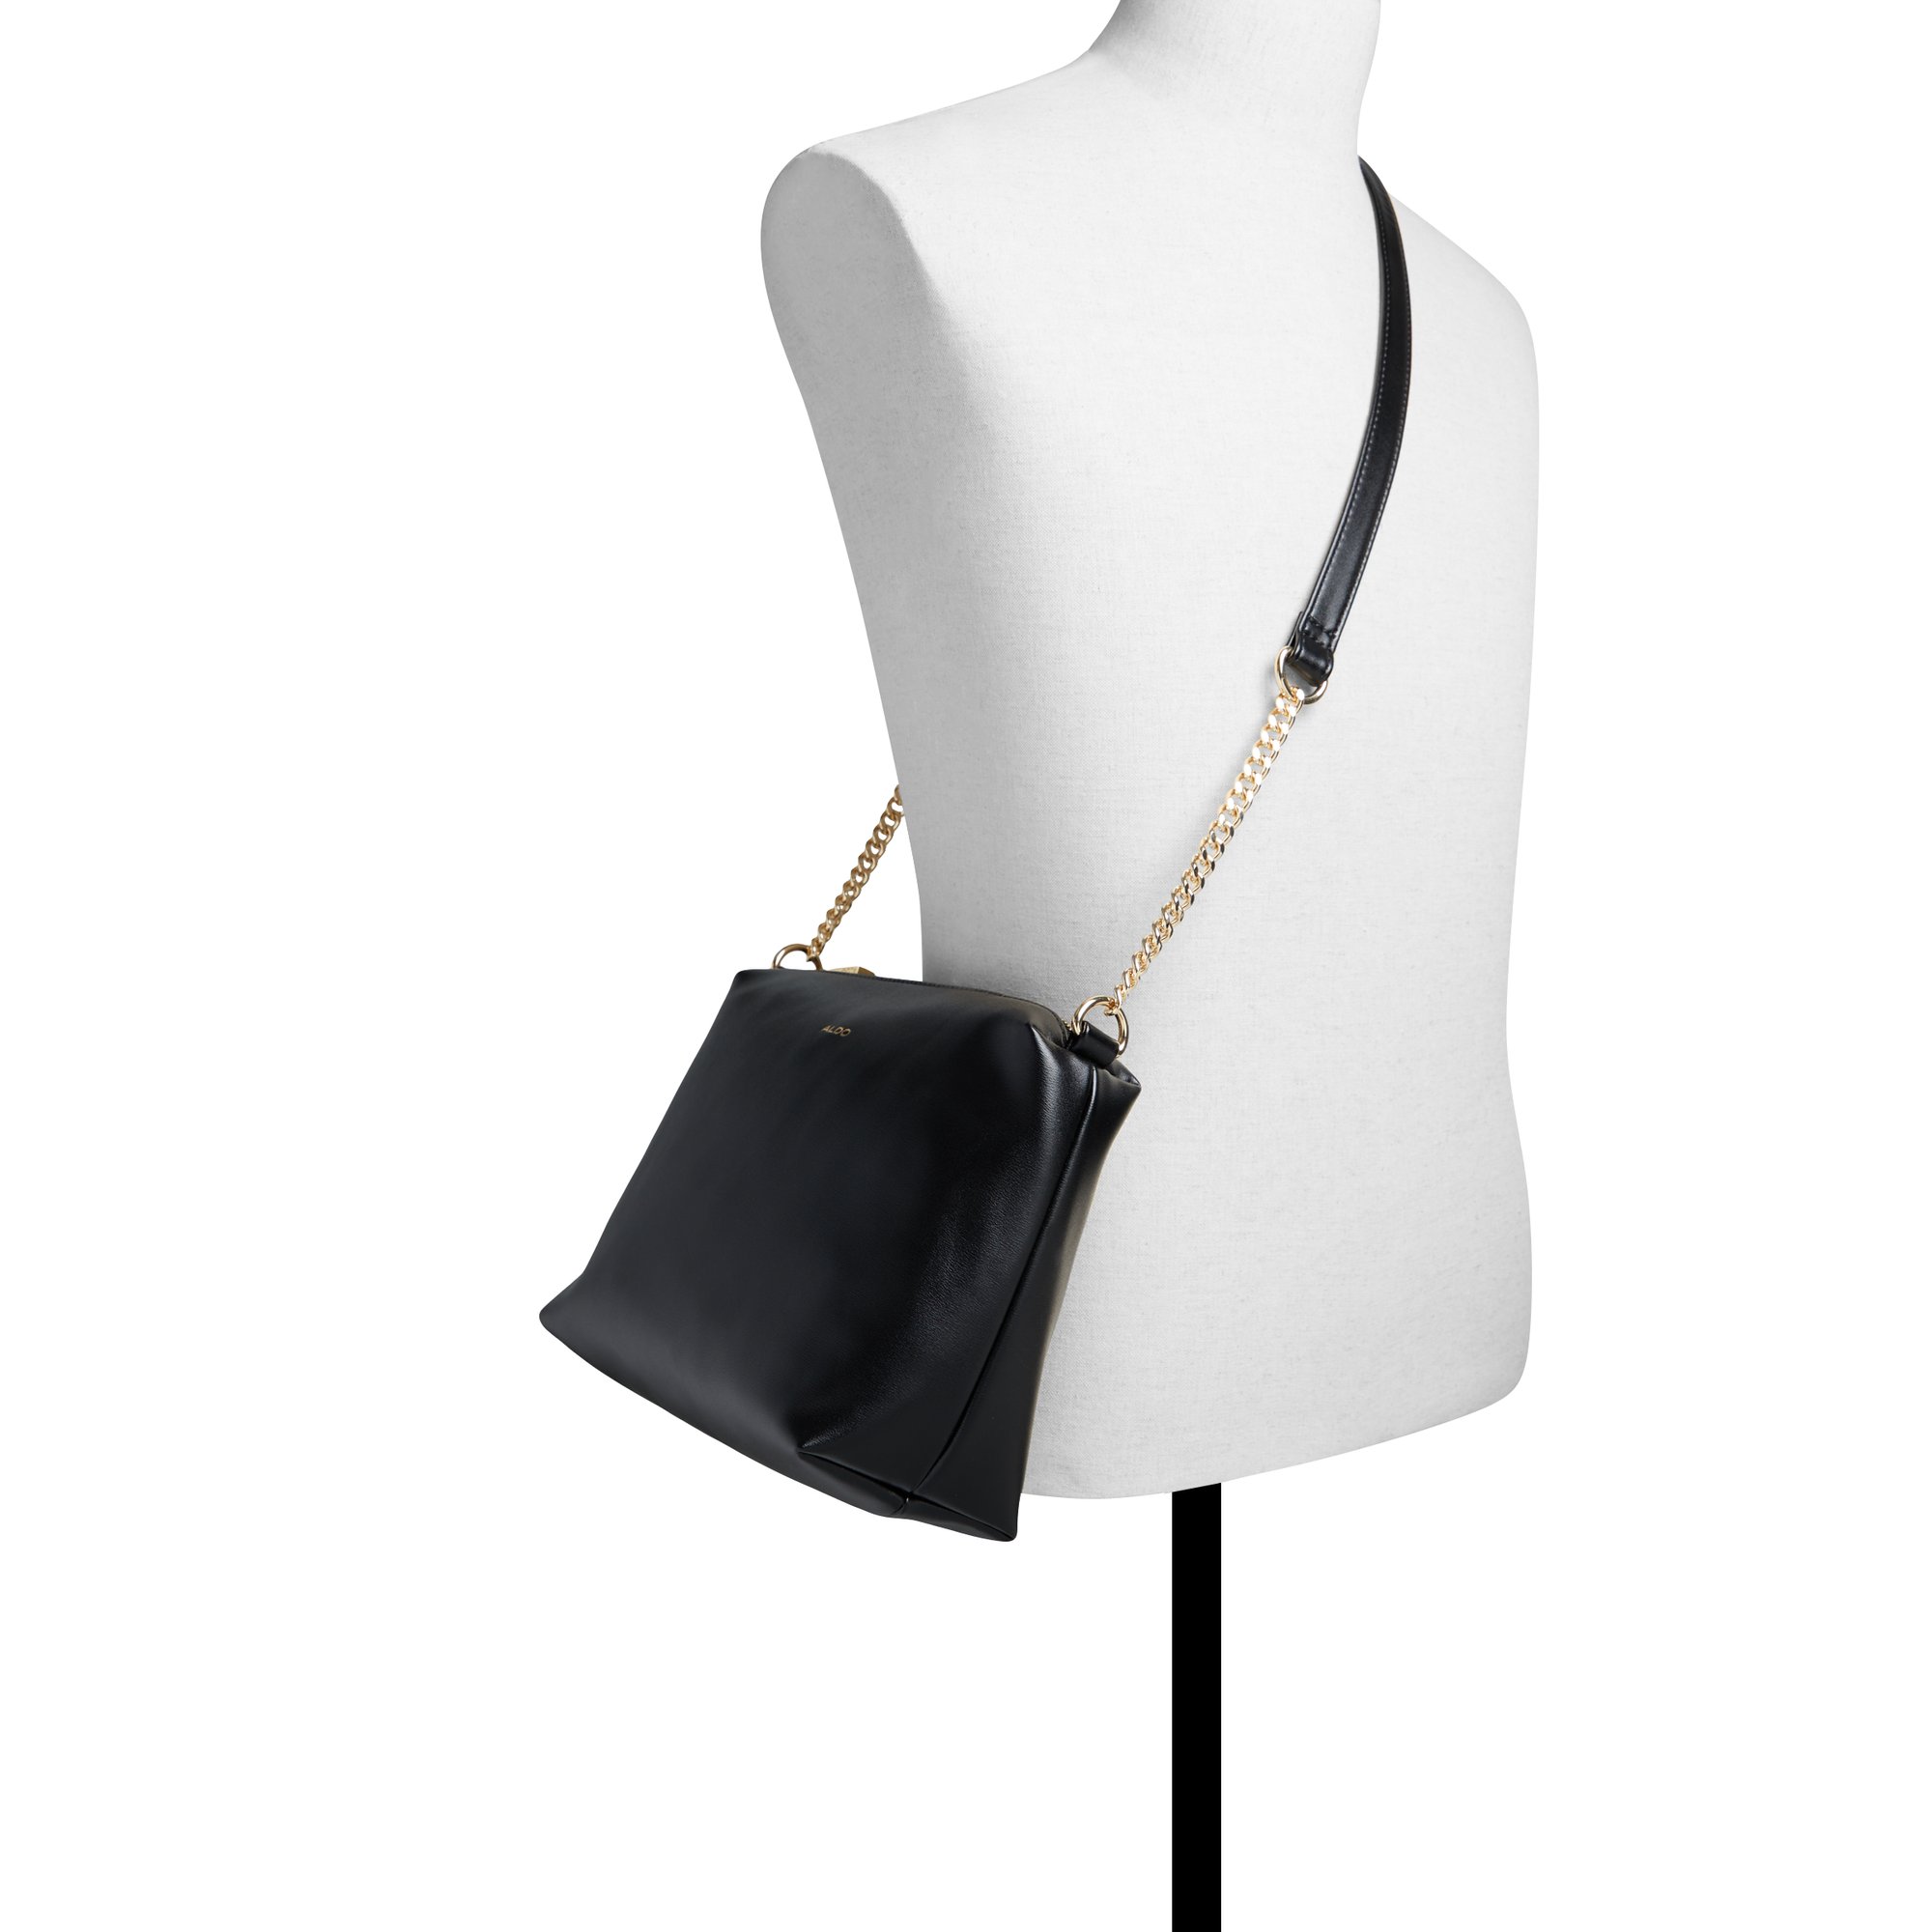 ALDO Ninetoninex - Women's Handbags Totes